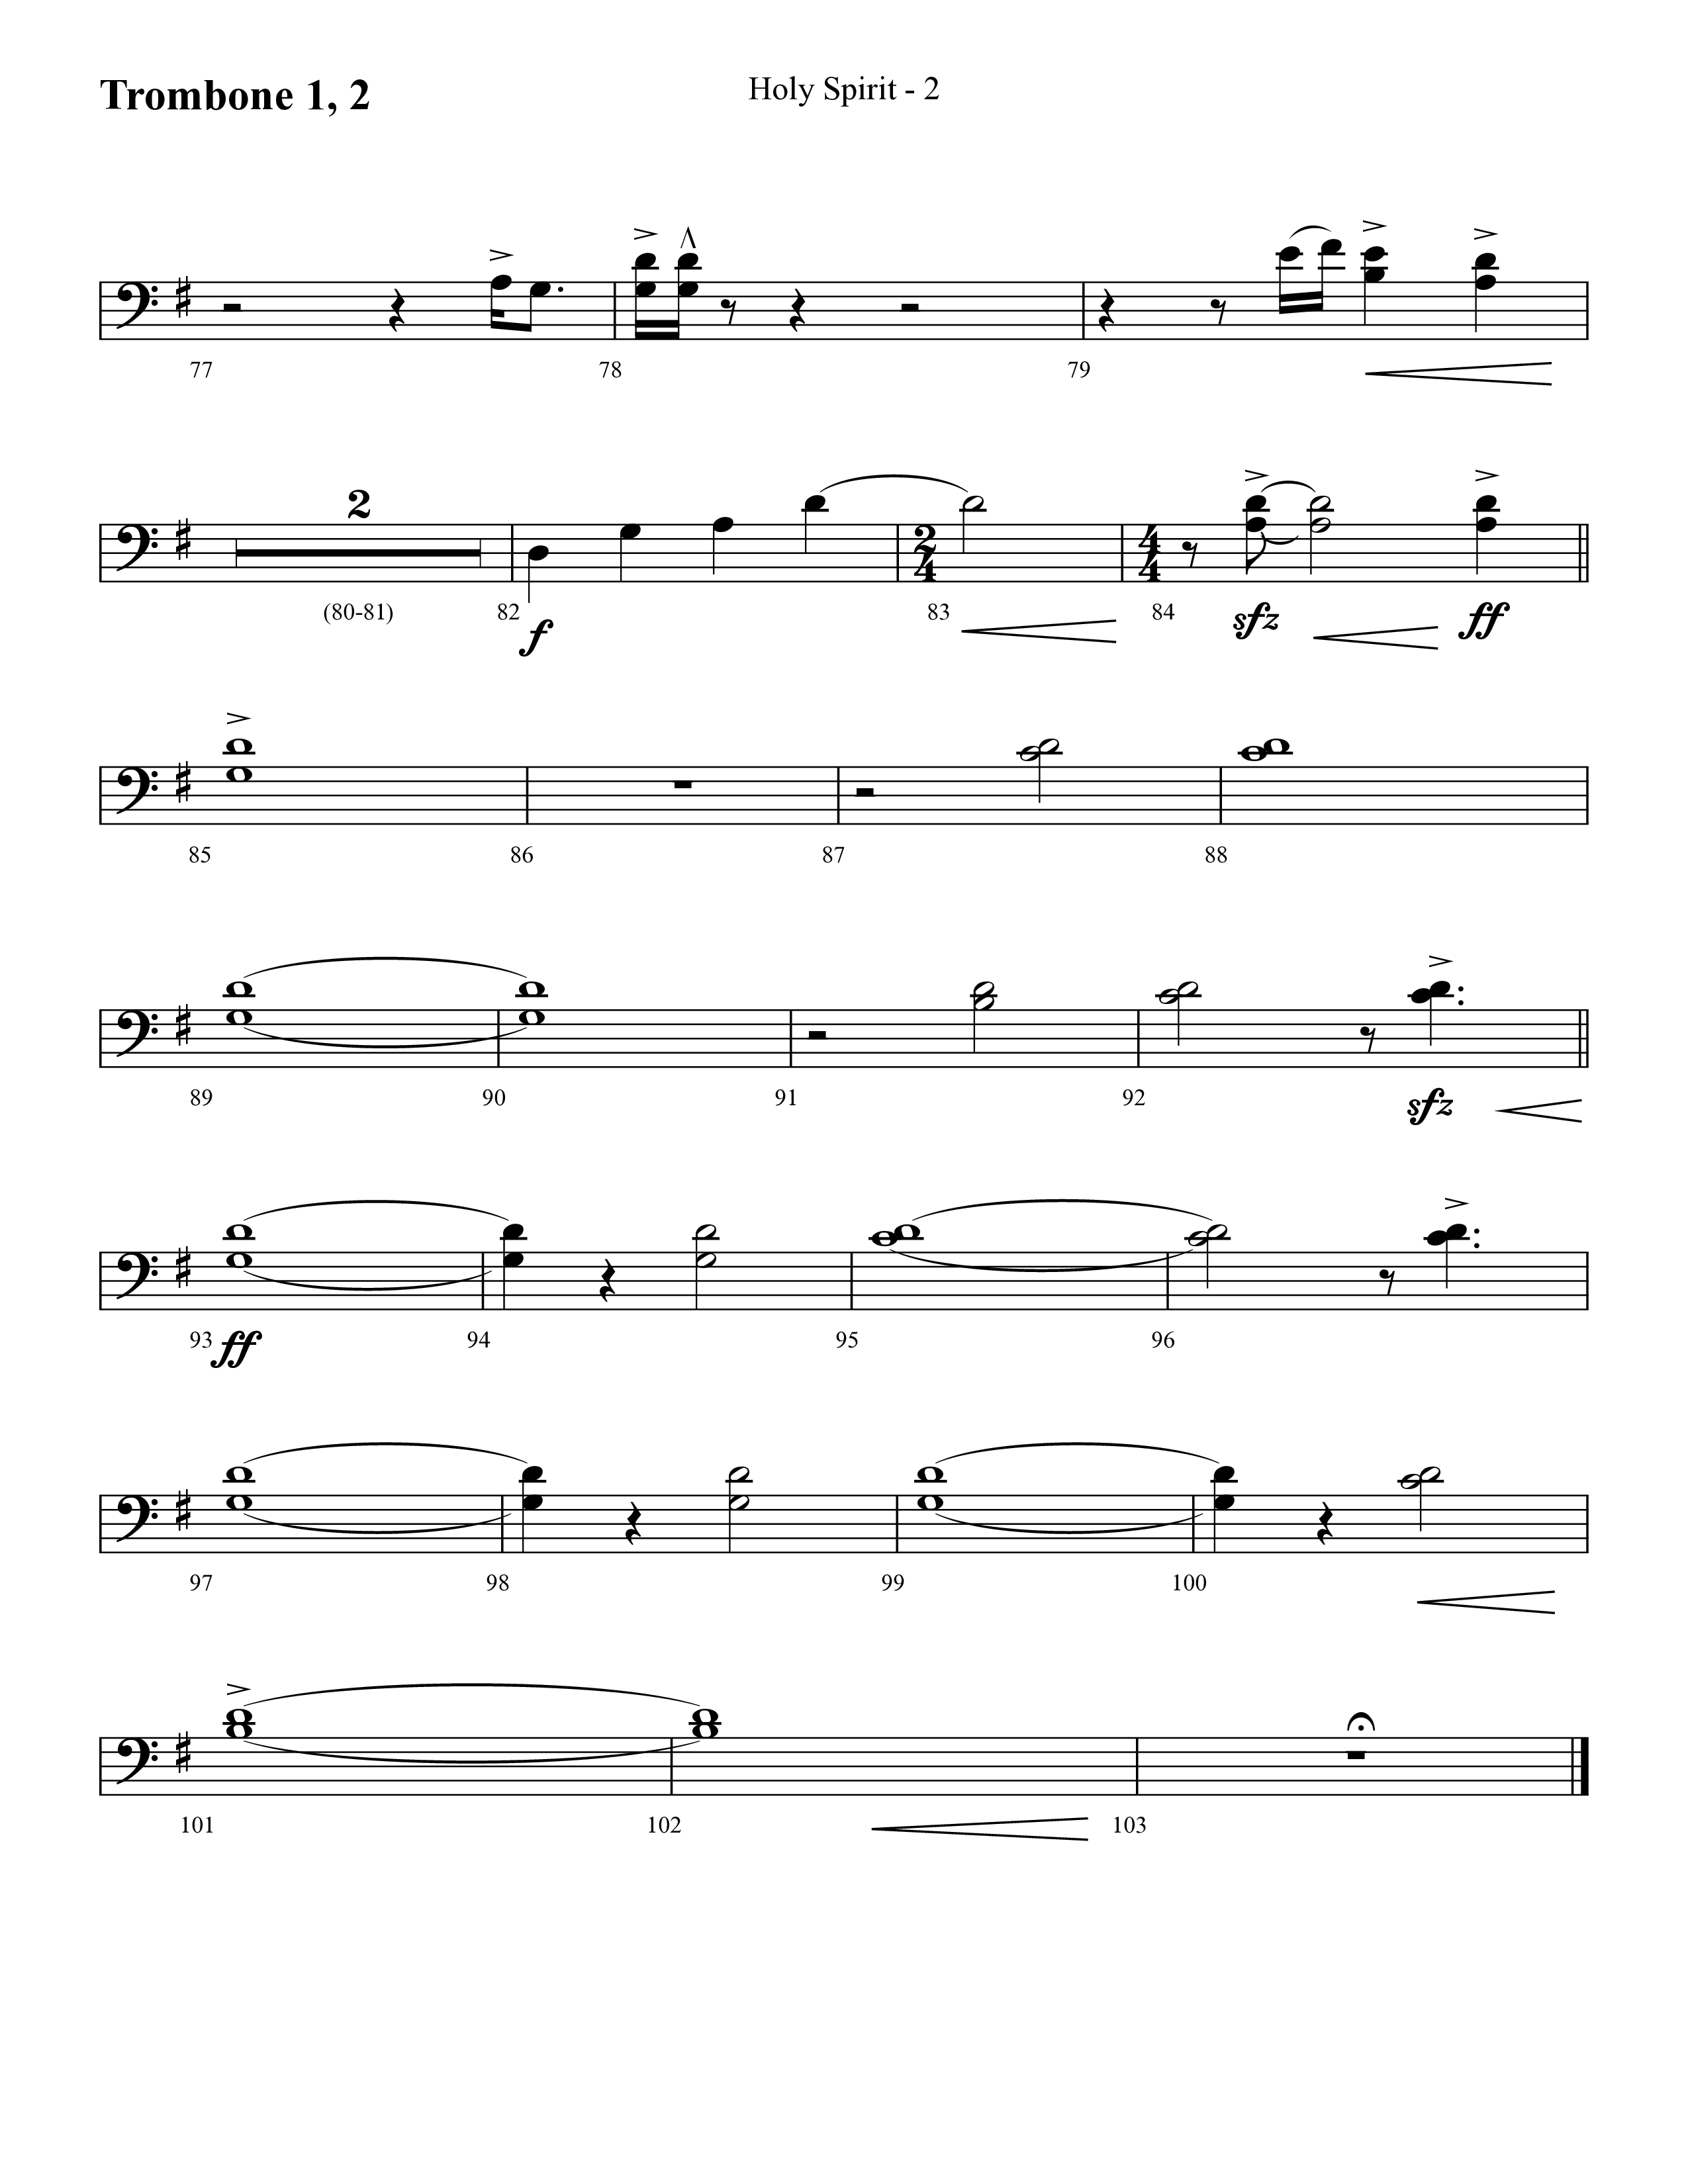 Holy Spirit  (Choral Anthem SATB) Trombone 1/2 (Lifeway Choral / Arr. Cliff Duren)